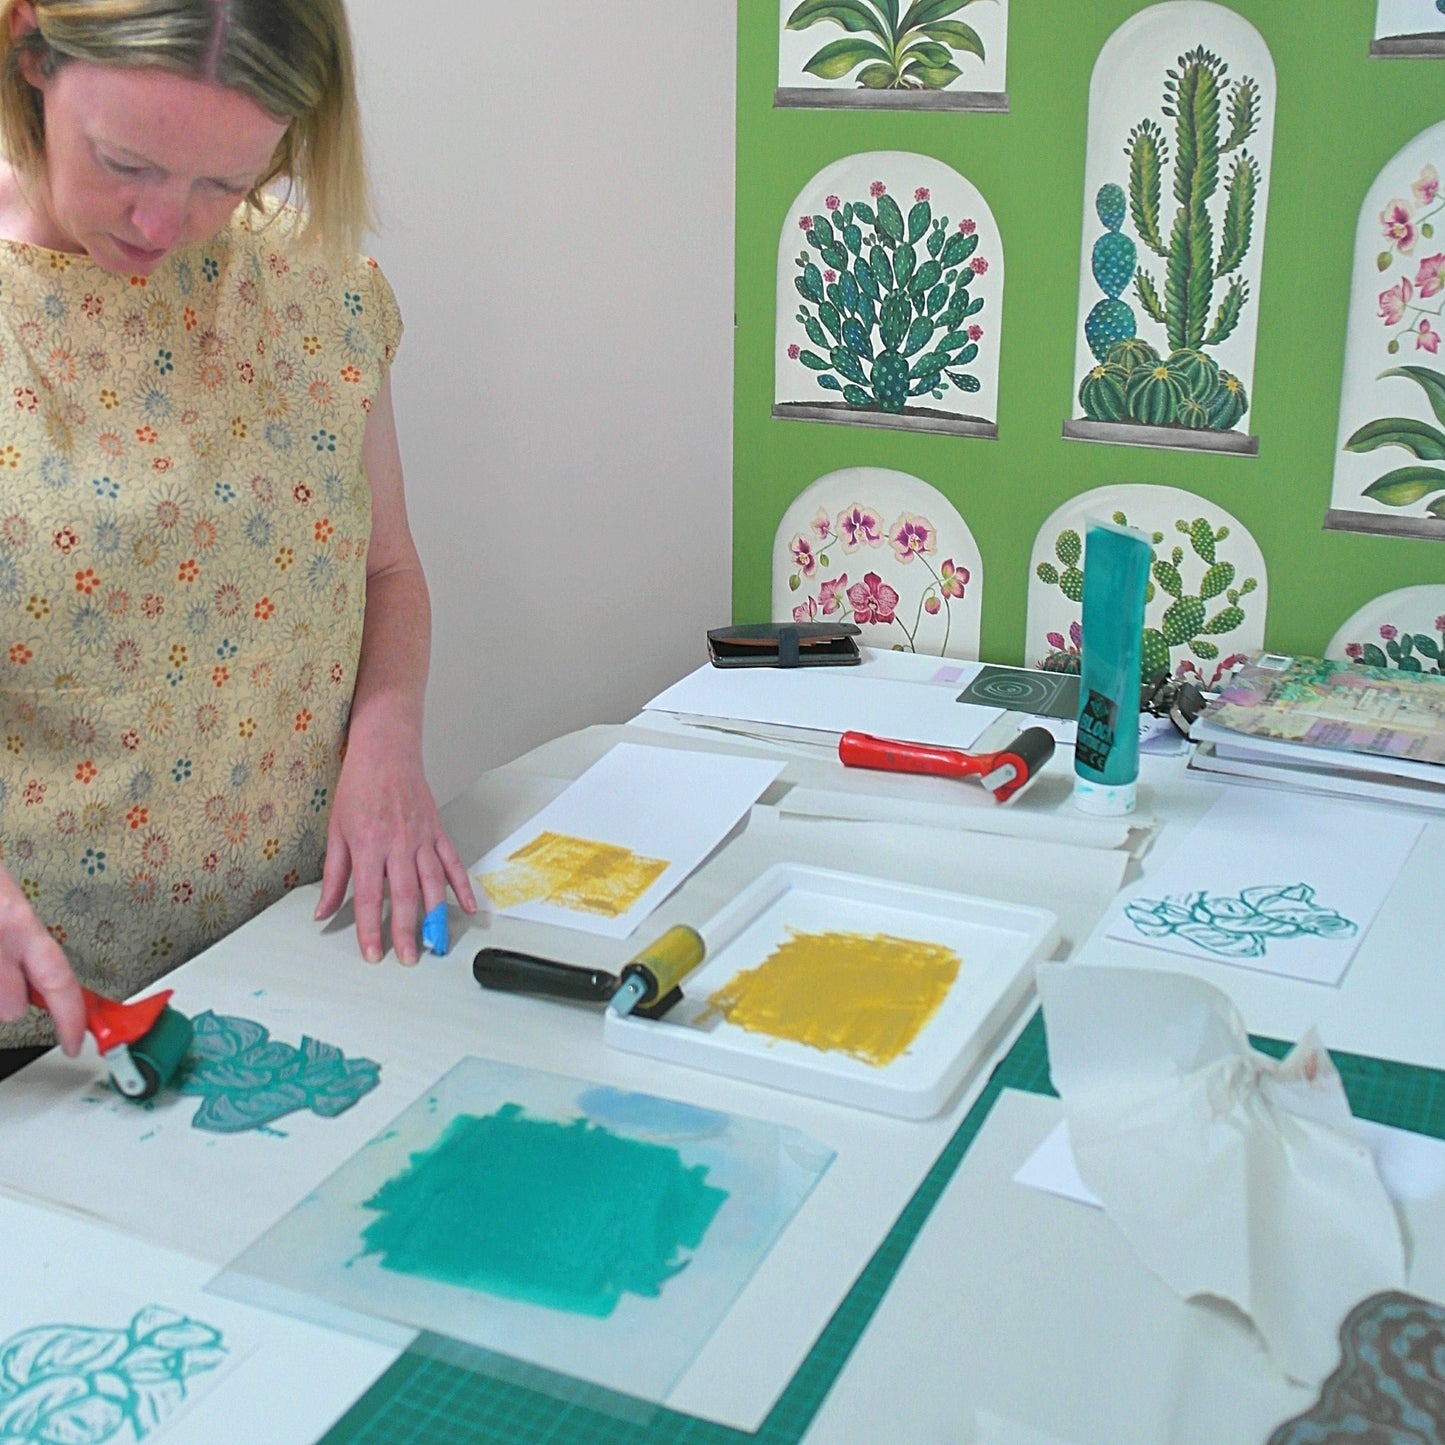 Workshop linocut & print beginners